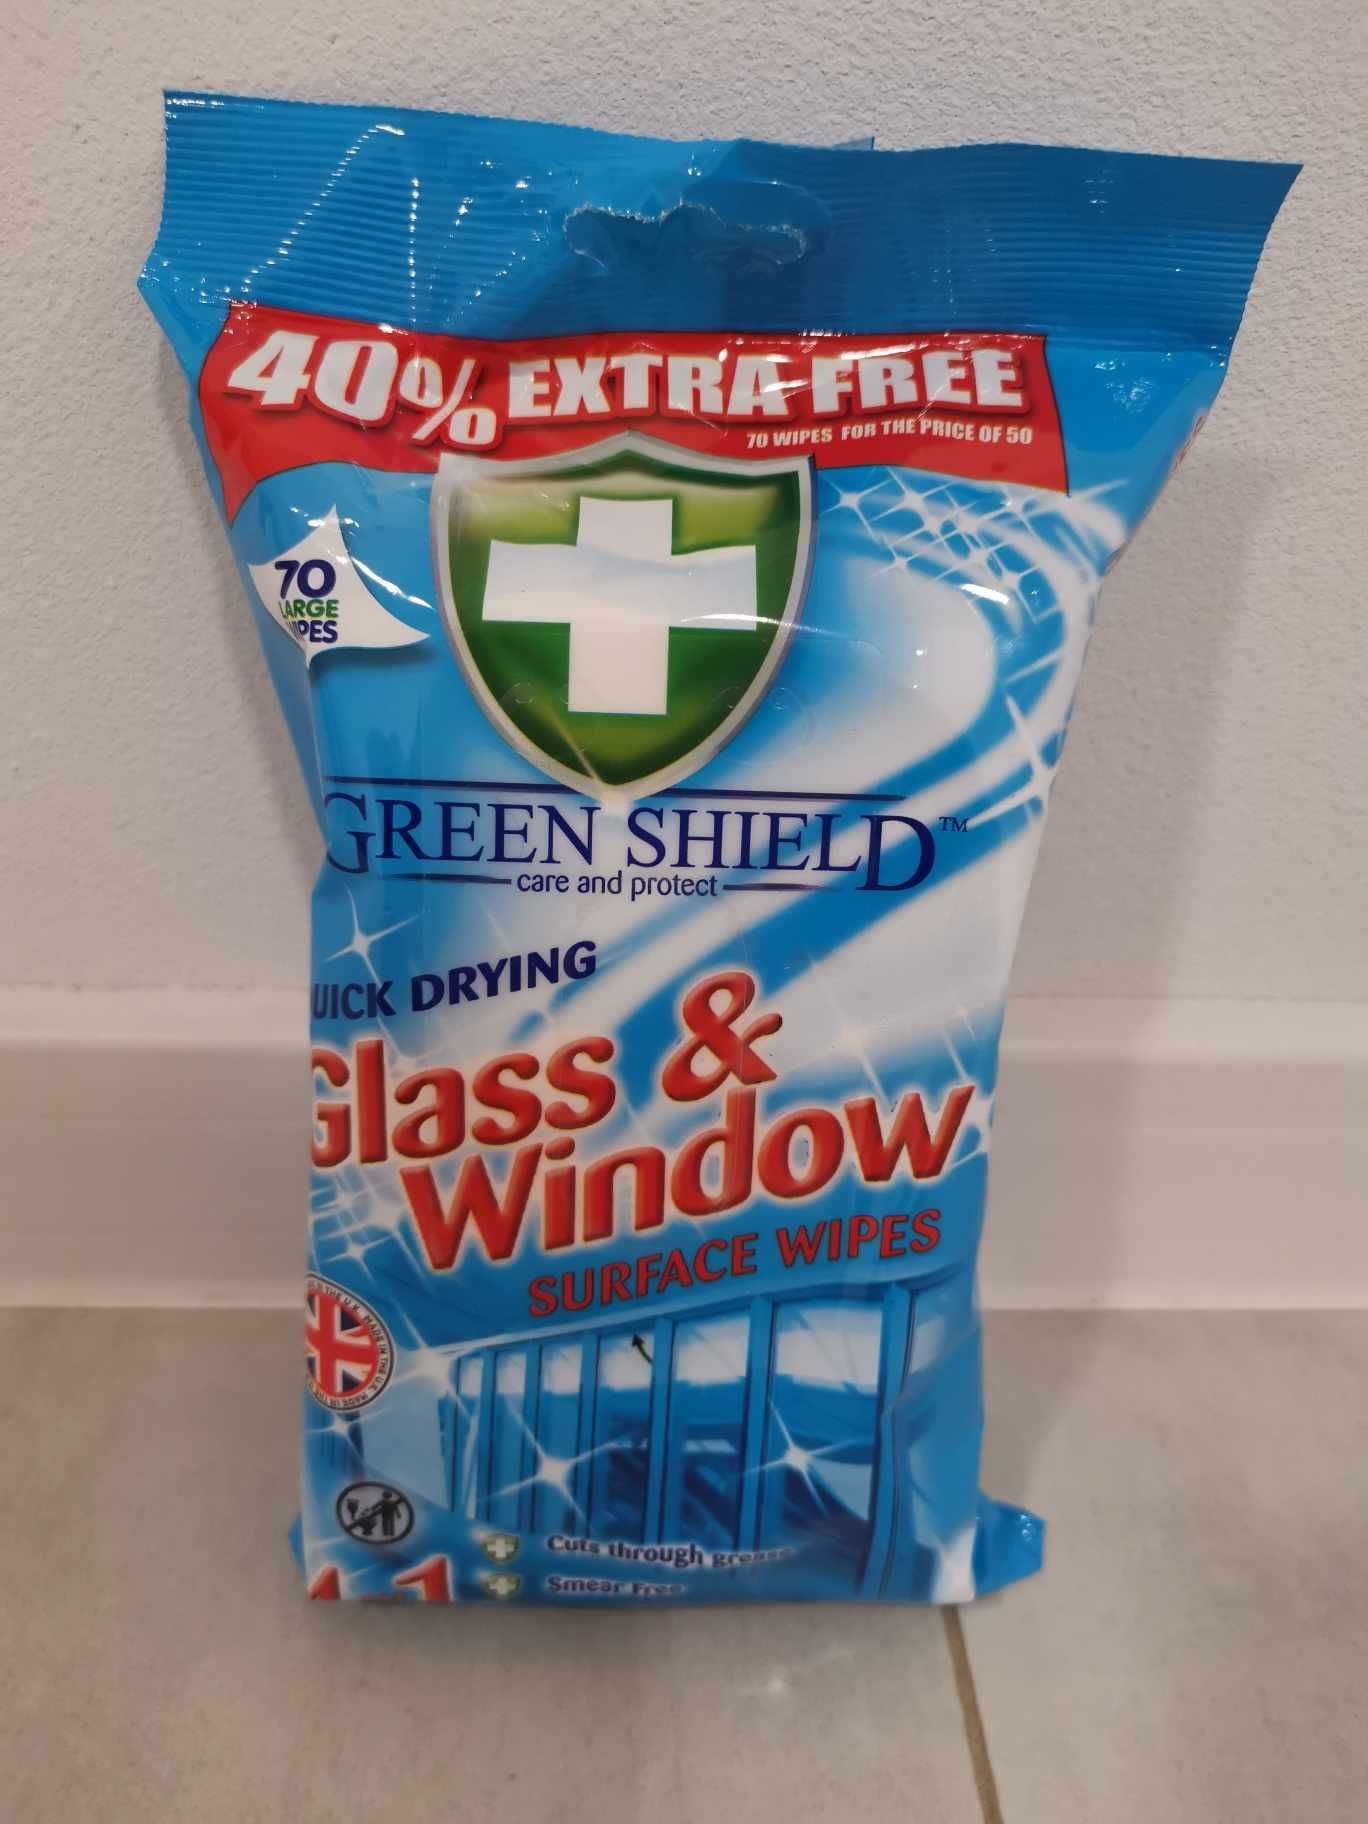 Chusteczki nawilżane Green Shield Bathroom Glass & Window Microwave